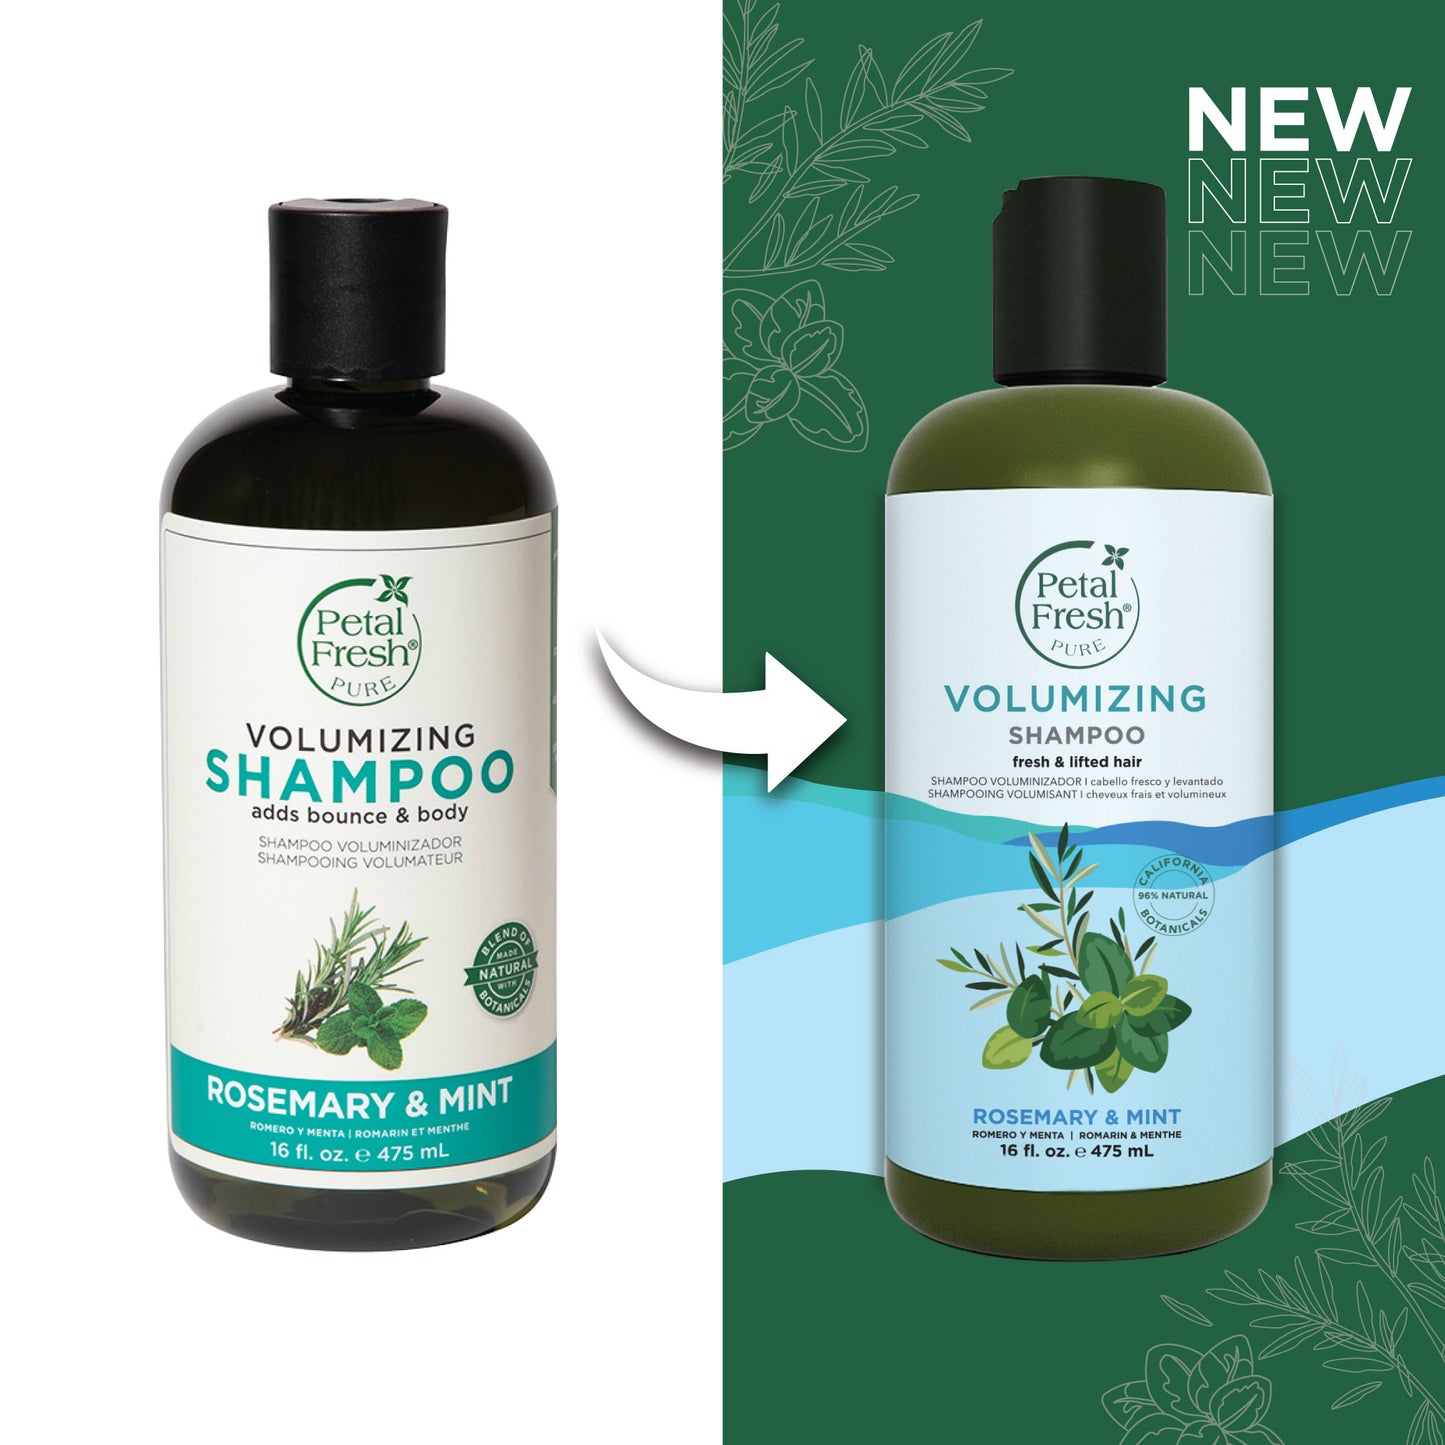 Volumizing Shampoo with Rosemary and Mint